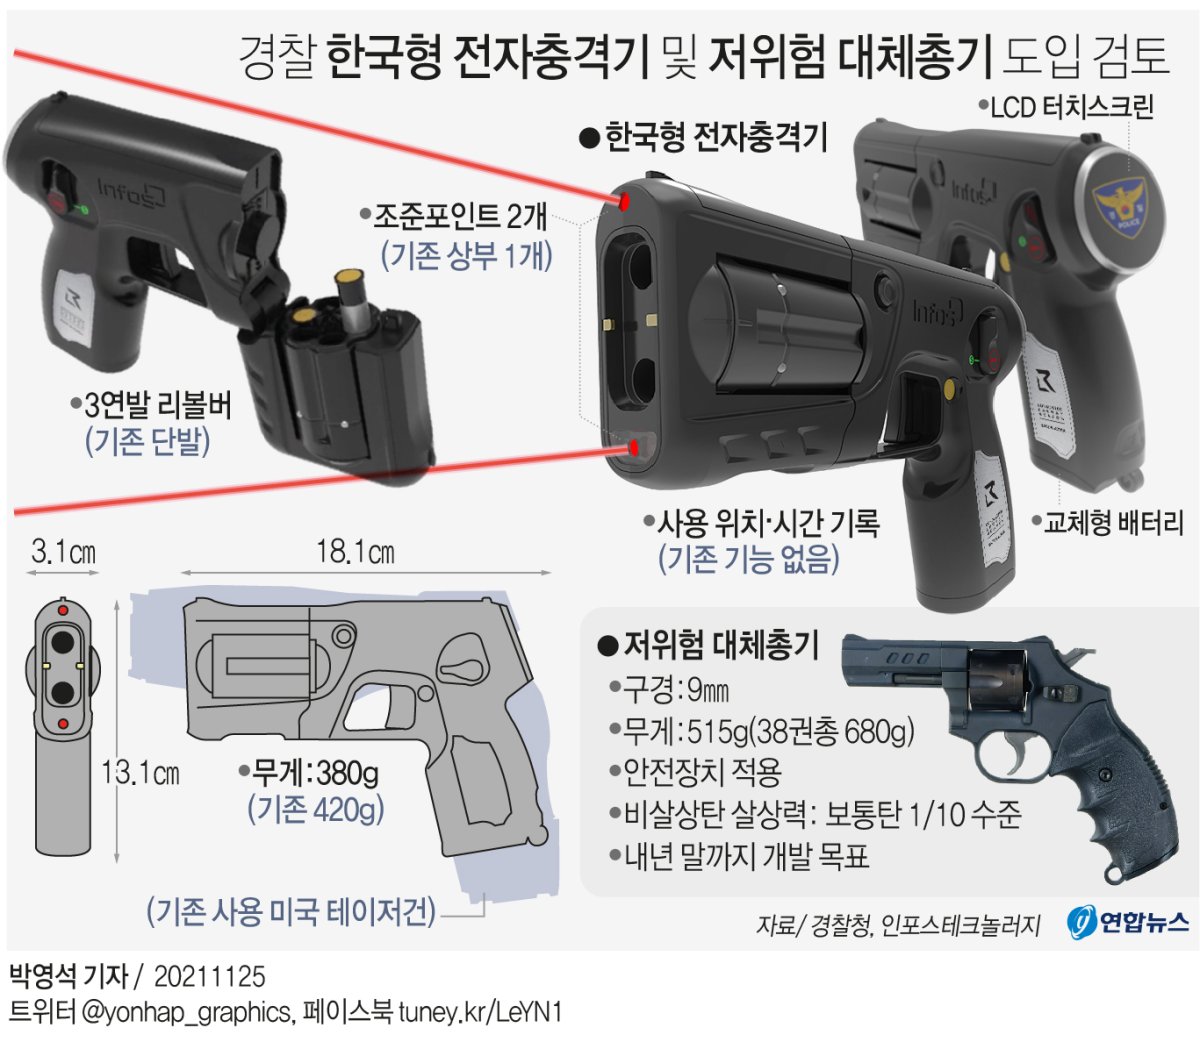 [그래픽] 경찰 한국형 전자충격기·저위험 대체총기 도입 검토